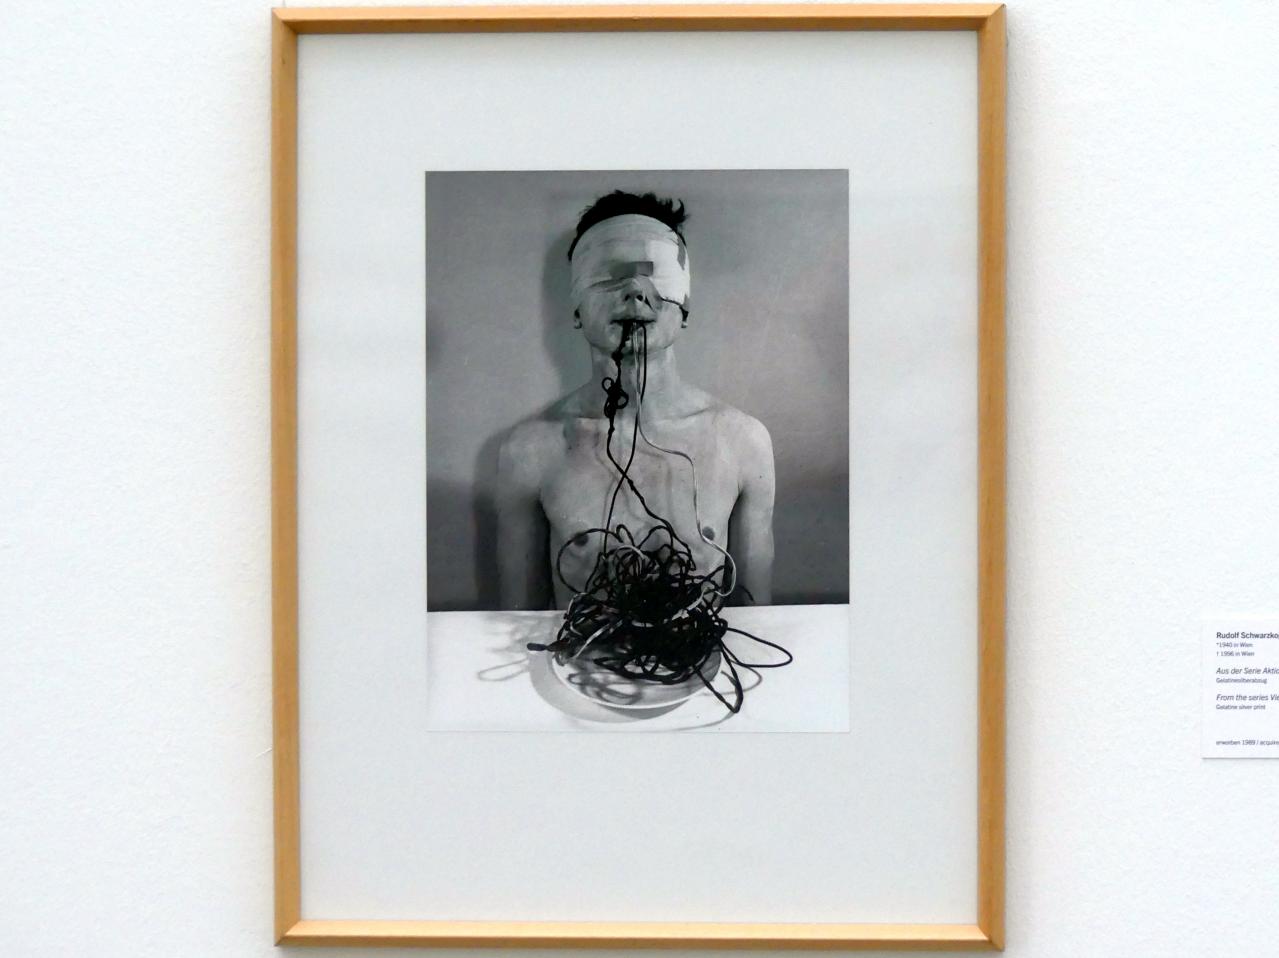 Rudolf Schwarzkogler (1965), Aus der Serie Aktion Wien, Linz, Lentos Kunstmuseum Linz, Saal 9 - Das Jahrzehnt des Aufbruchs, 1965–1966, Bild 1/3